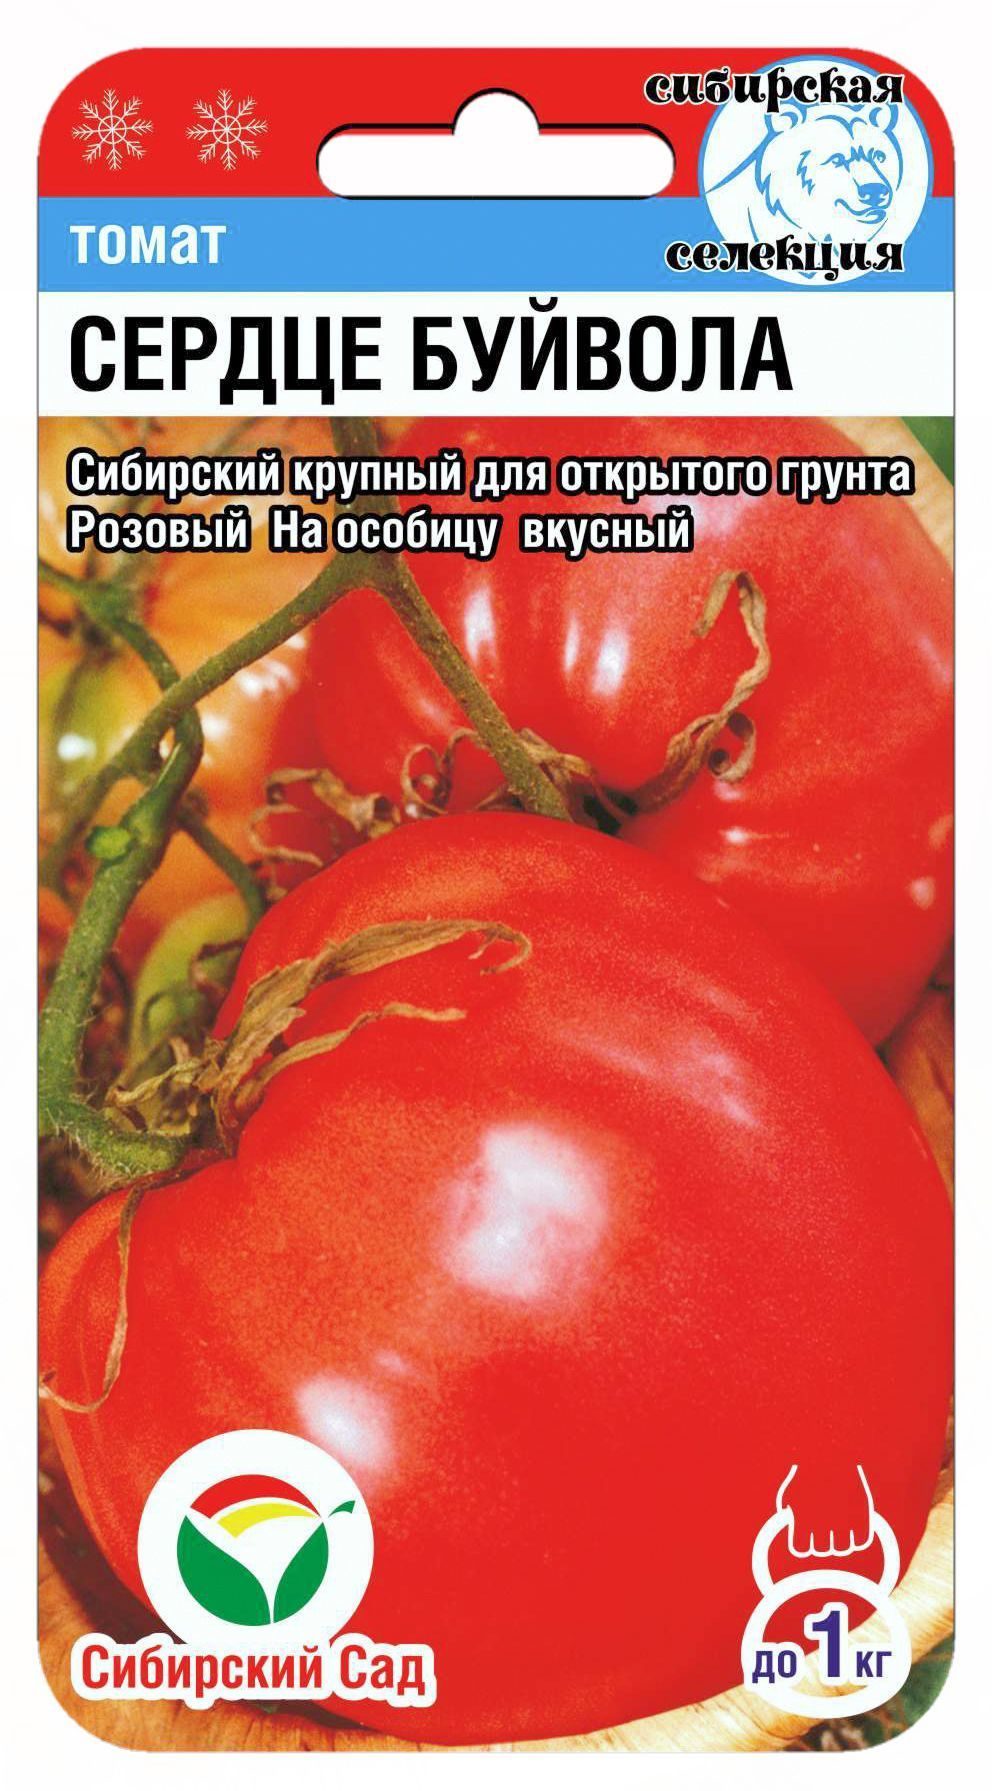 томат сердце австрии характеристика и описание сорта